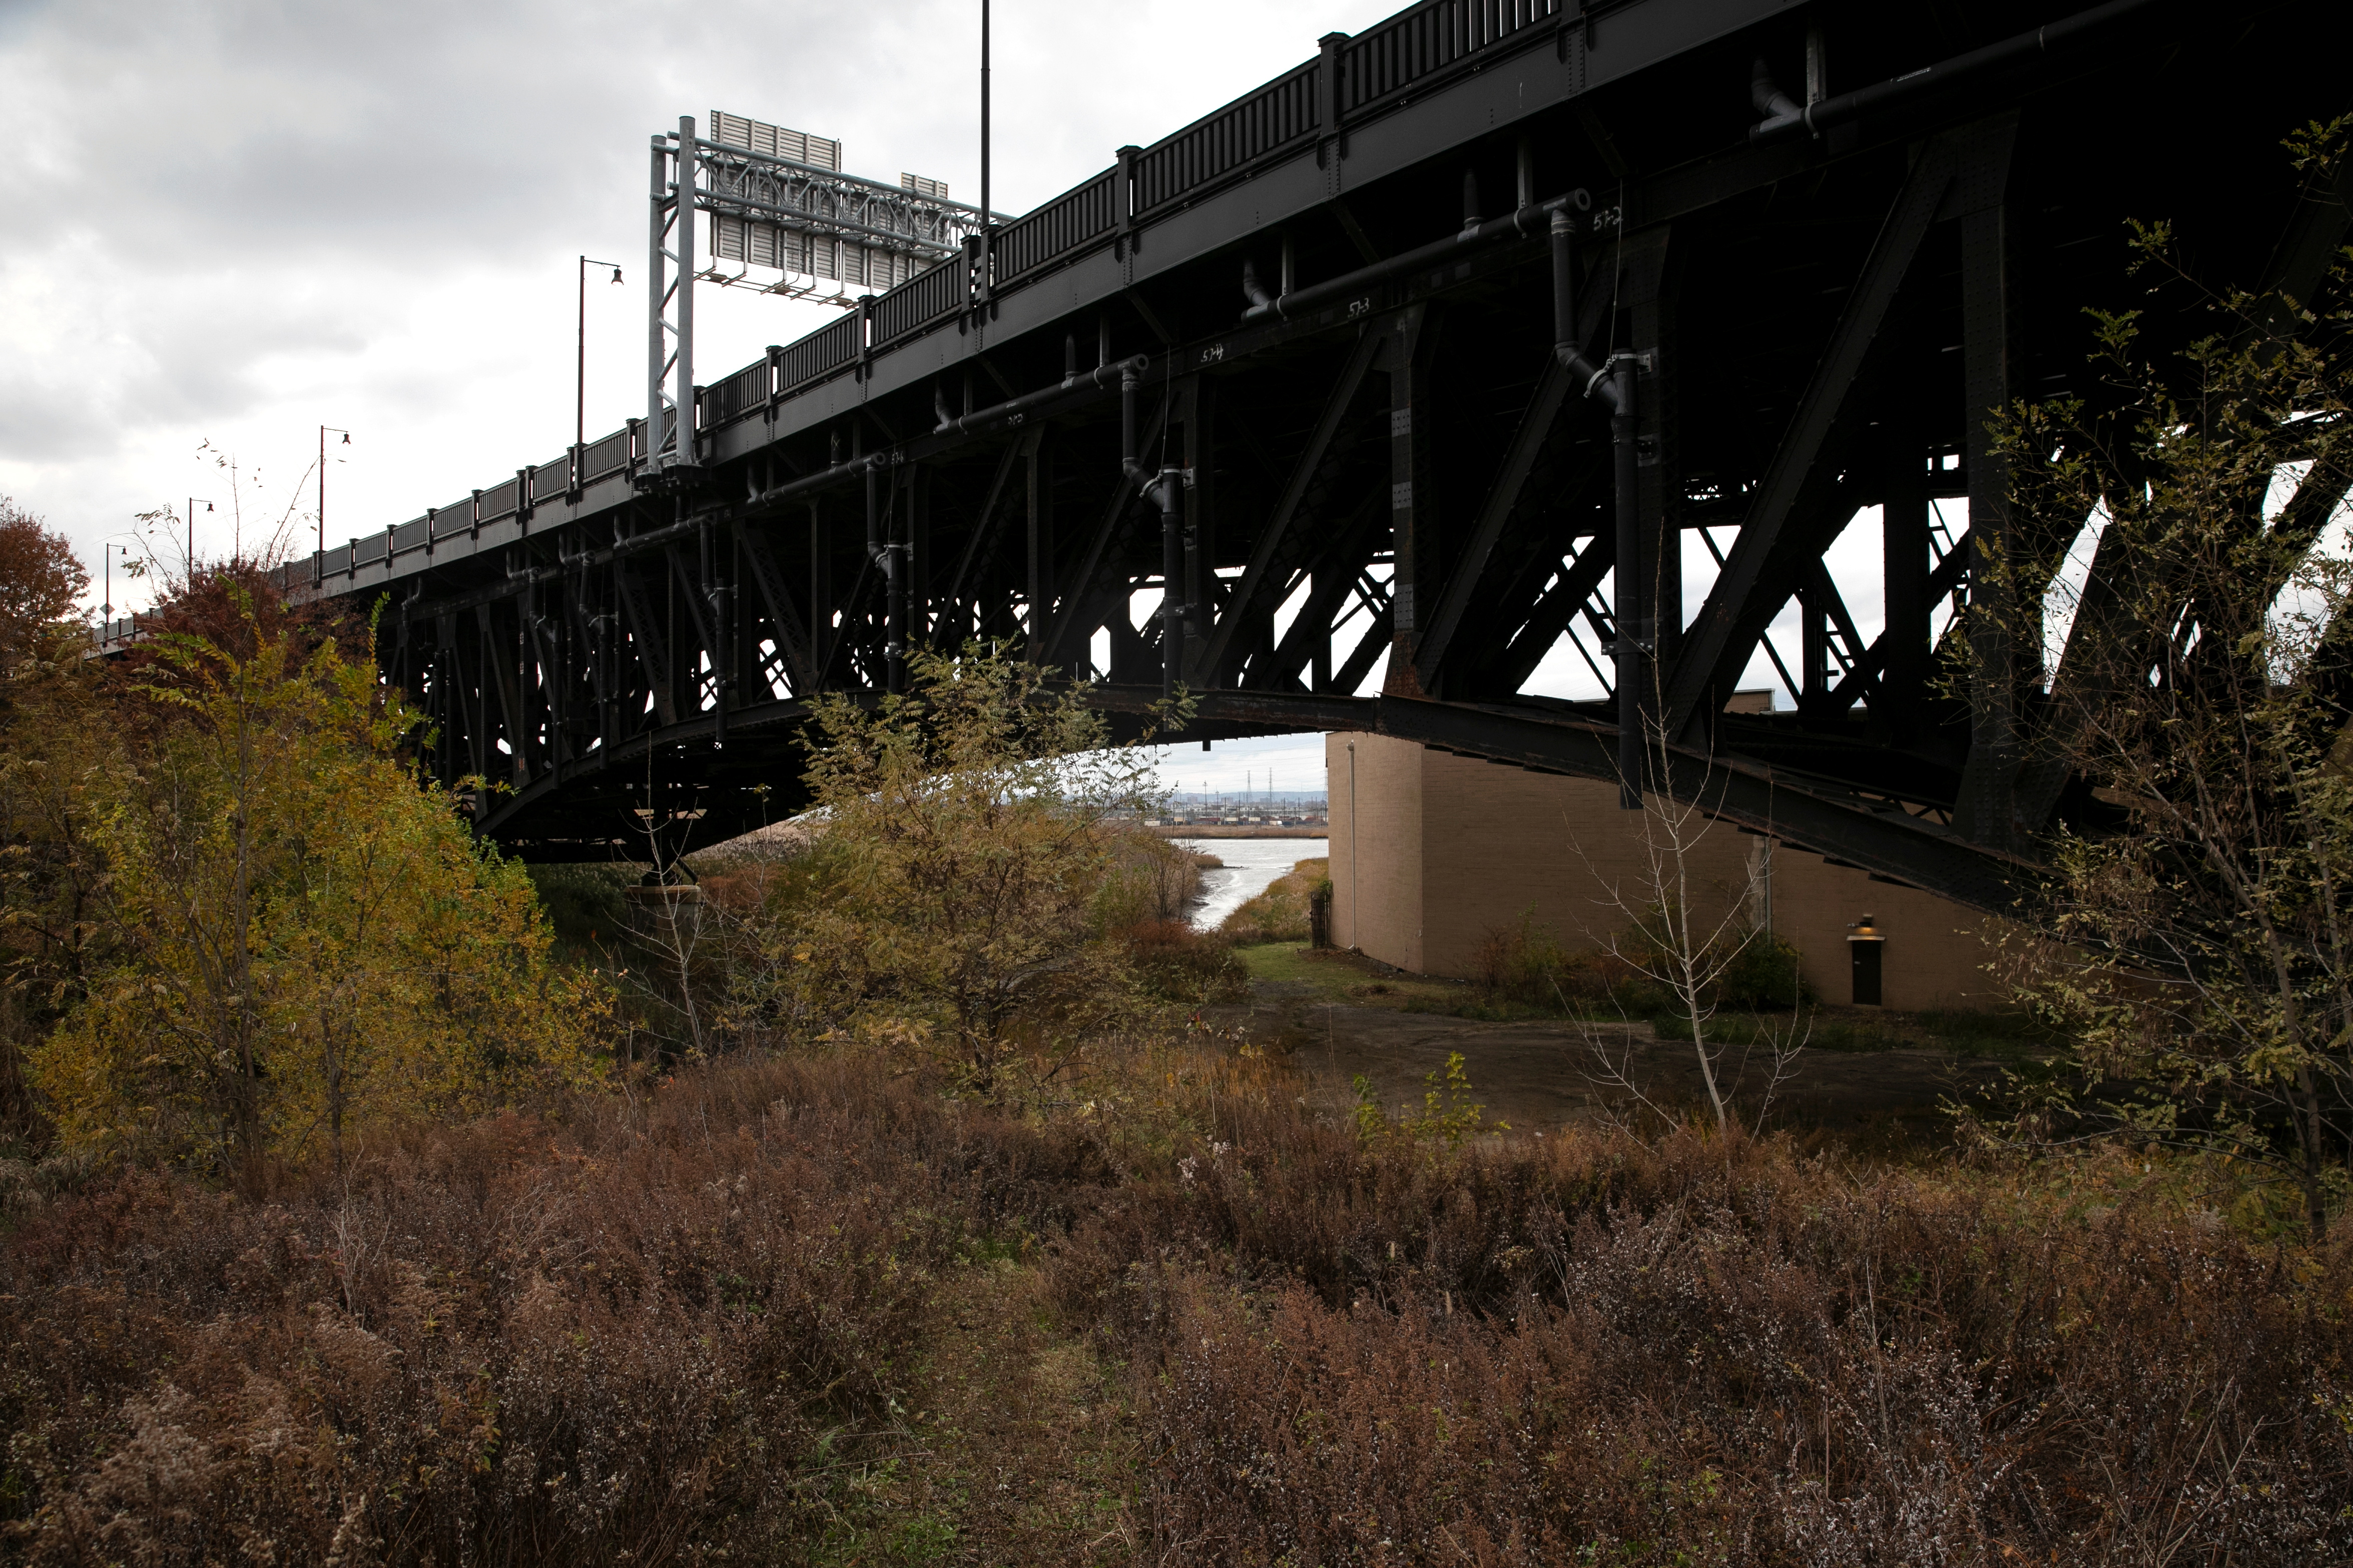 El área del puente Pulaski Skyway en Nueva Jersey que fue rastrillada por el FBI en busca del cuerpo de Hoffa REUTERS/Mike Segar